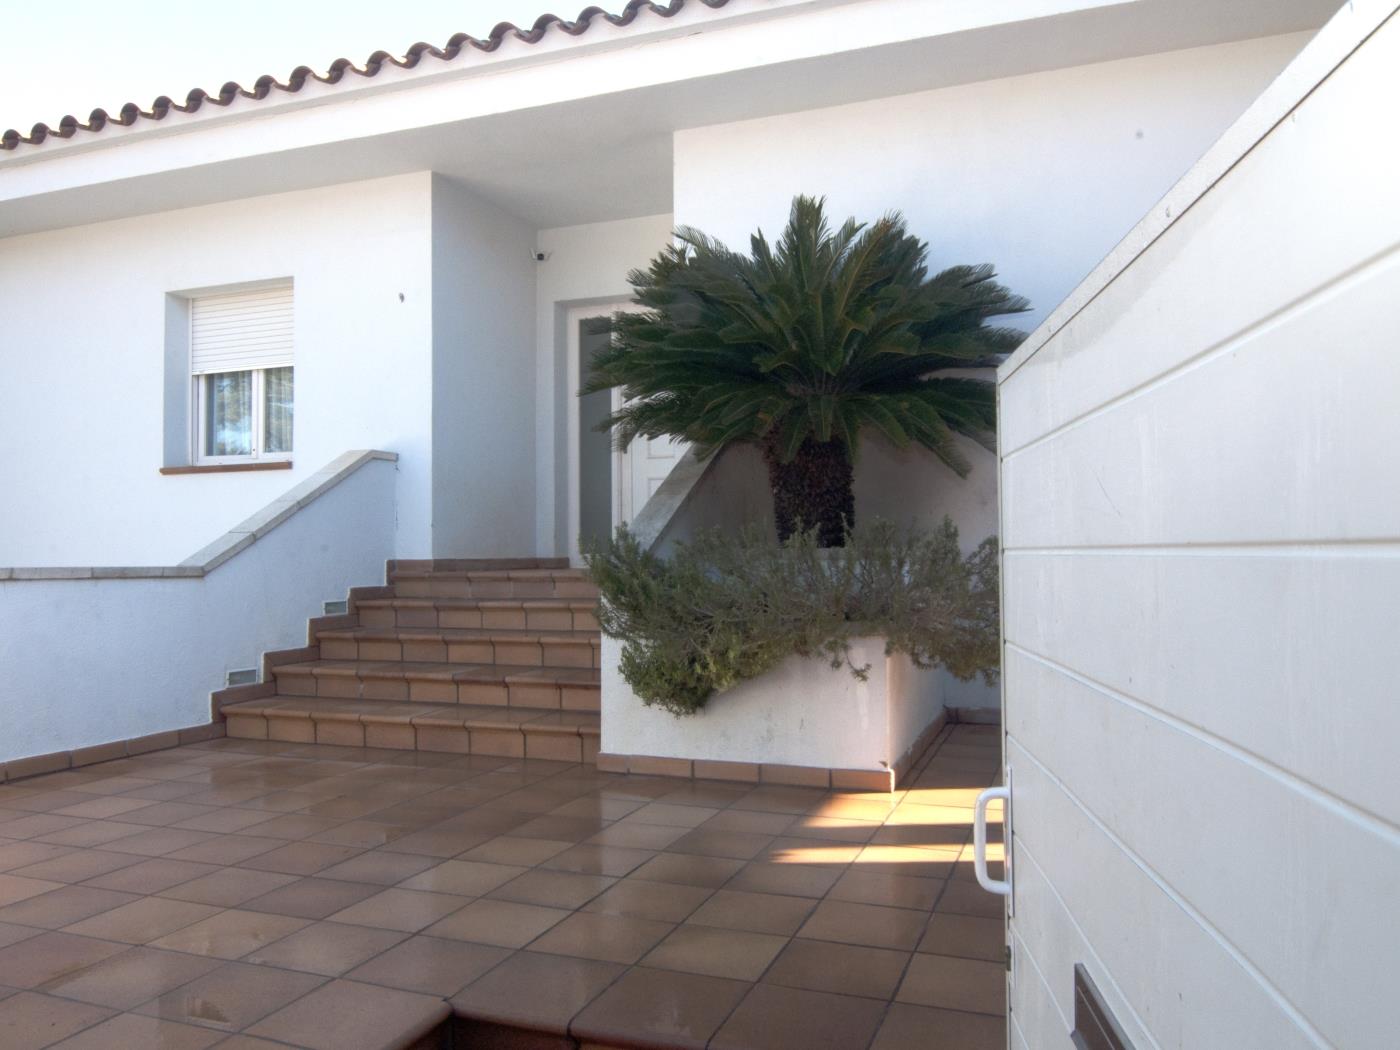 Magnificent villa with private pool, garden and barbecue in l'Escala